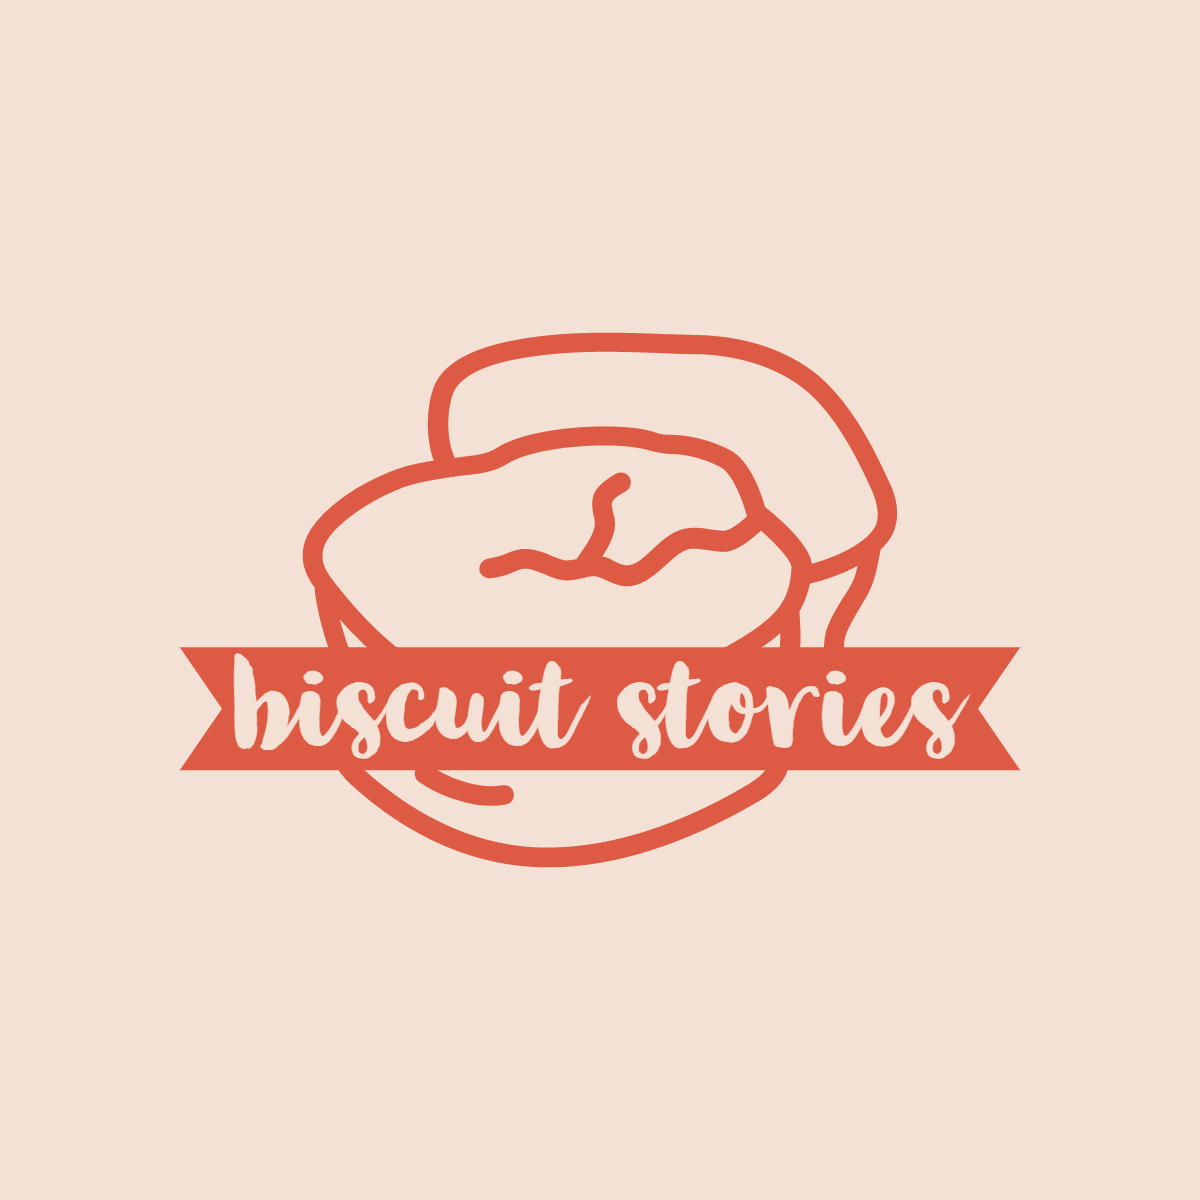 Biscuit Stories